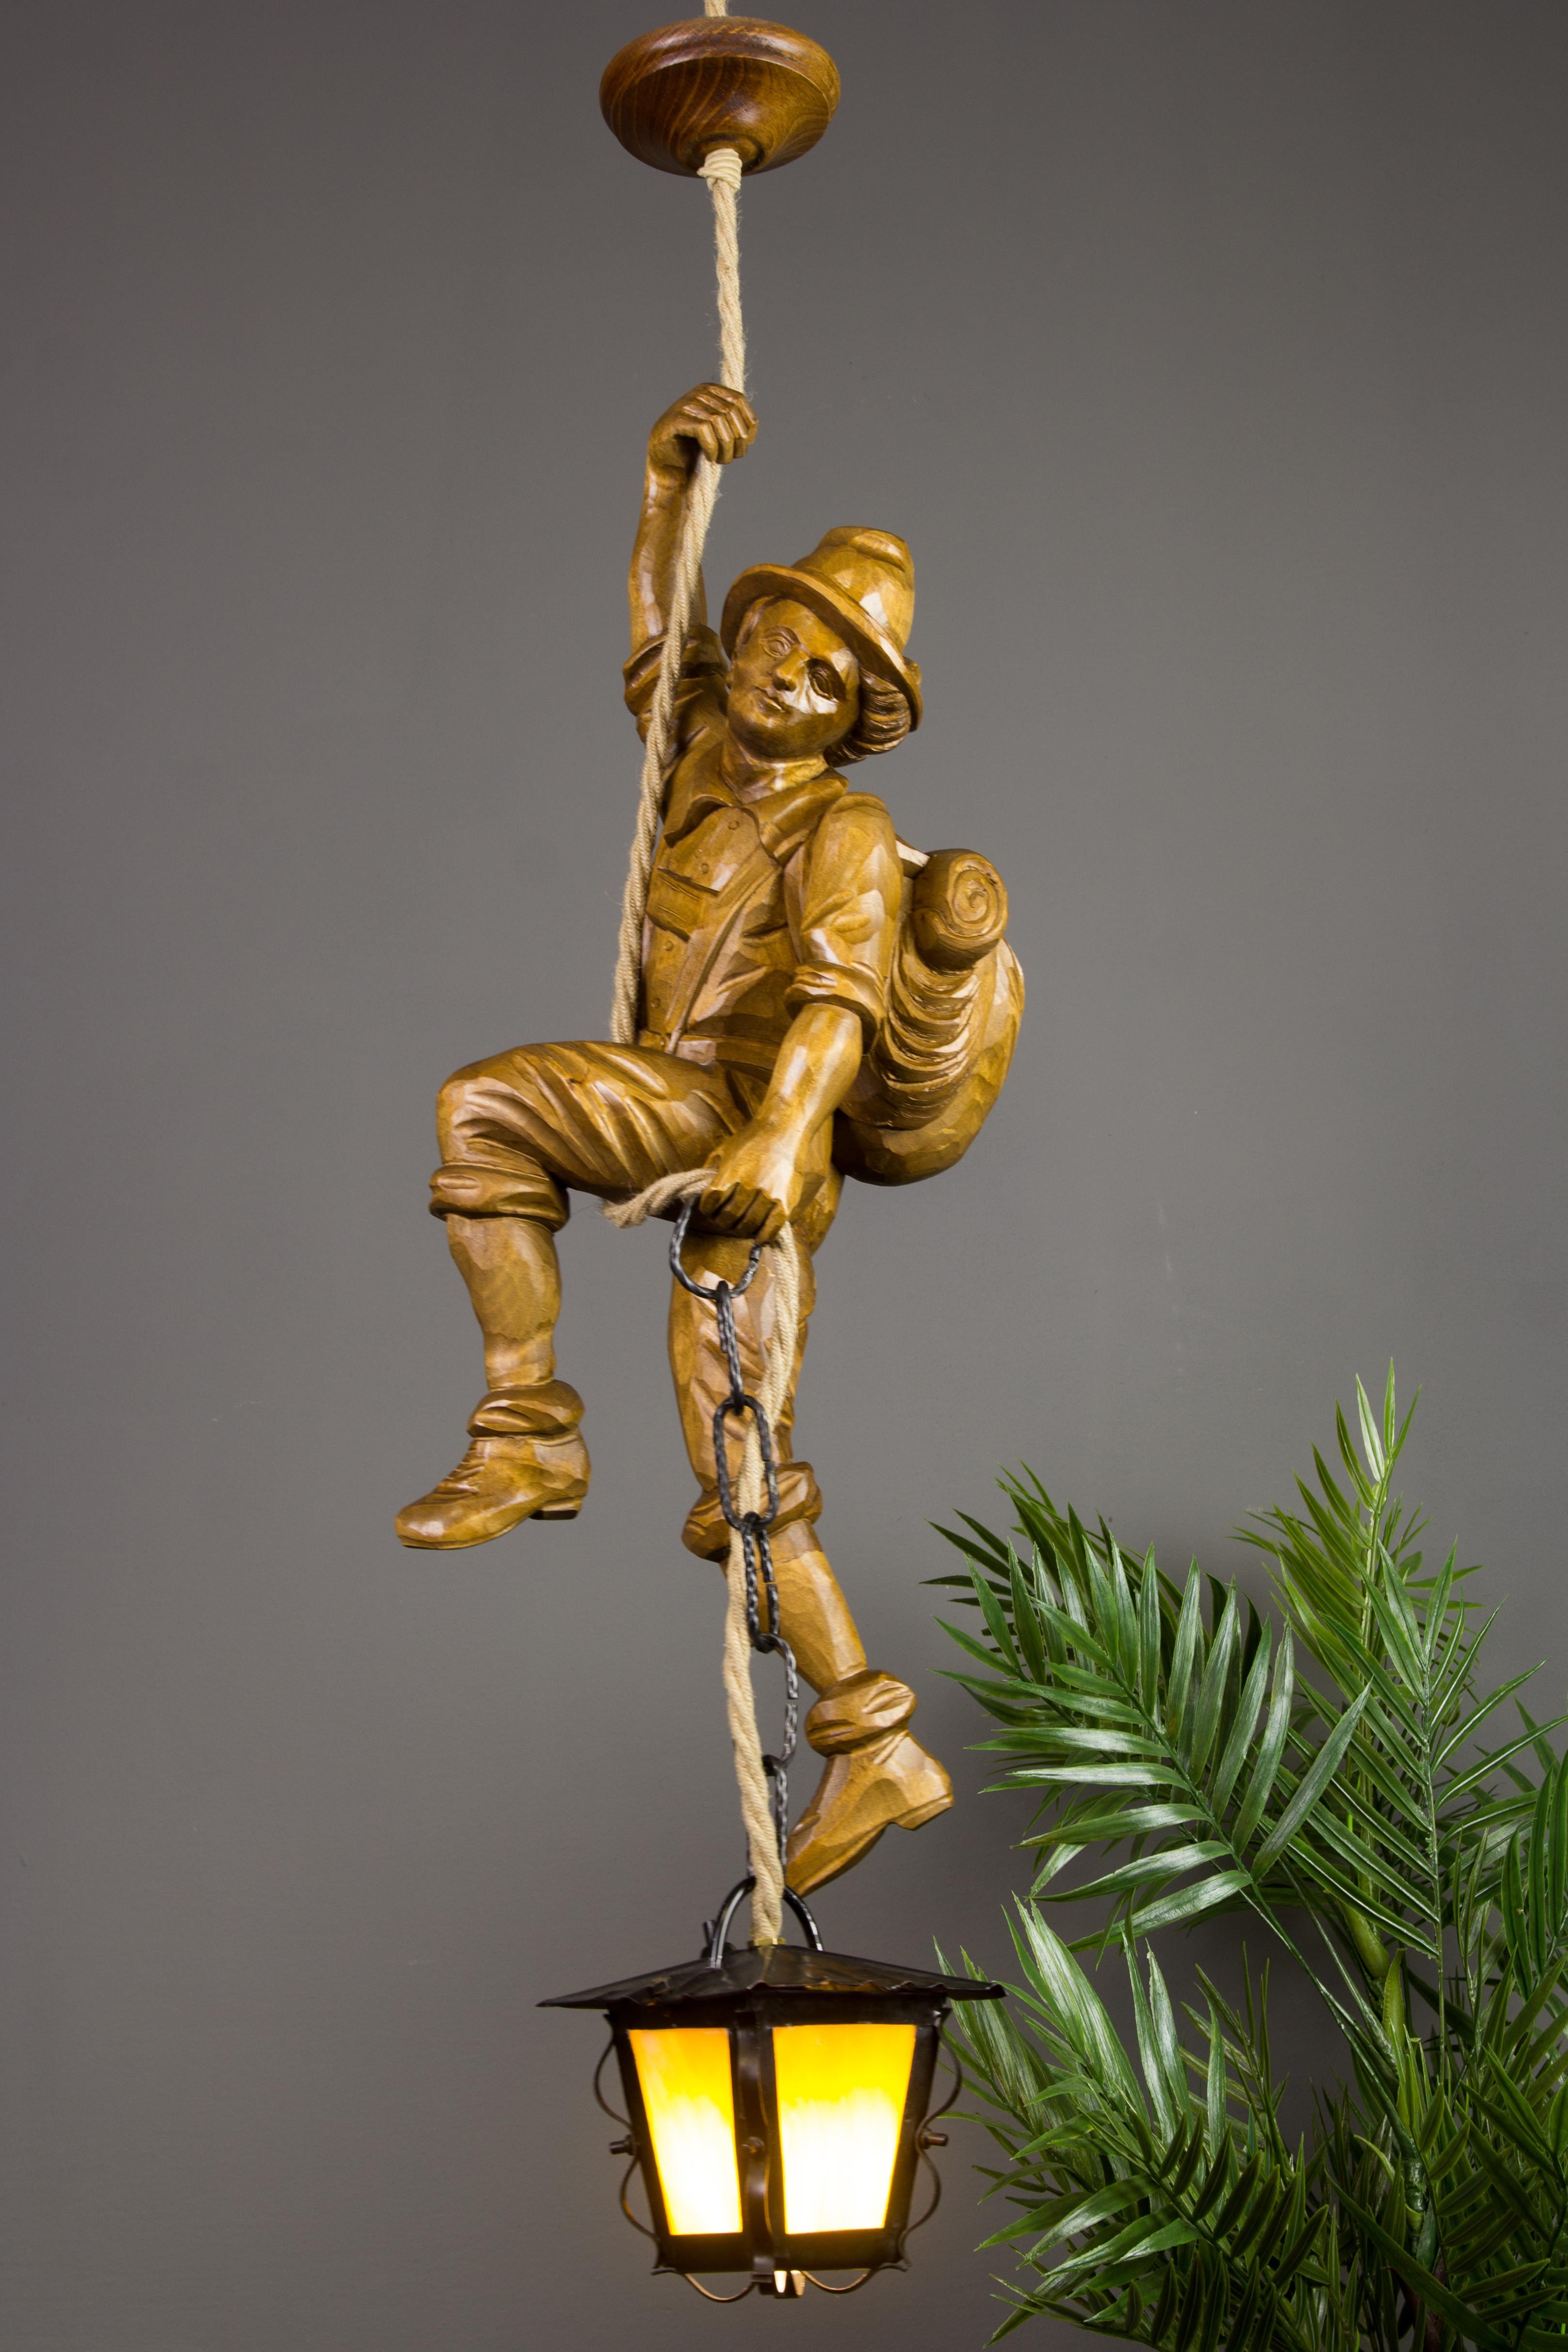 Cette magnifique lampe suspendue figurative de la Forêt Noire allemande présente une figure d'alpiniste sculptée à la main. L'alpiniste en bois sculpté avec un sac à dos s'accroche à une corde et tient dans une main une lanterne en métal avec un